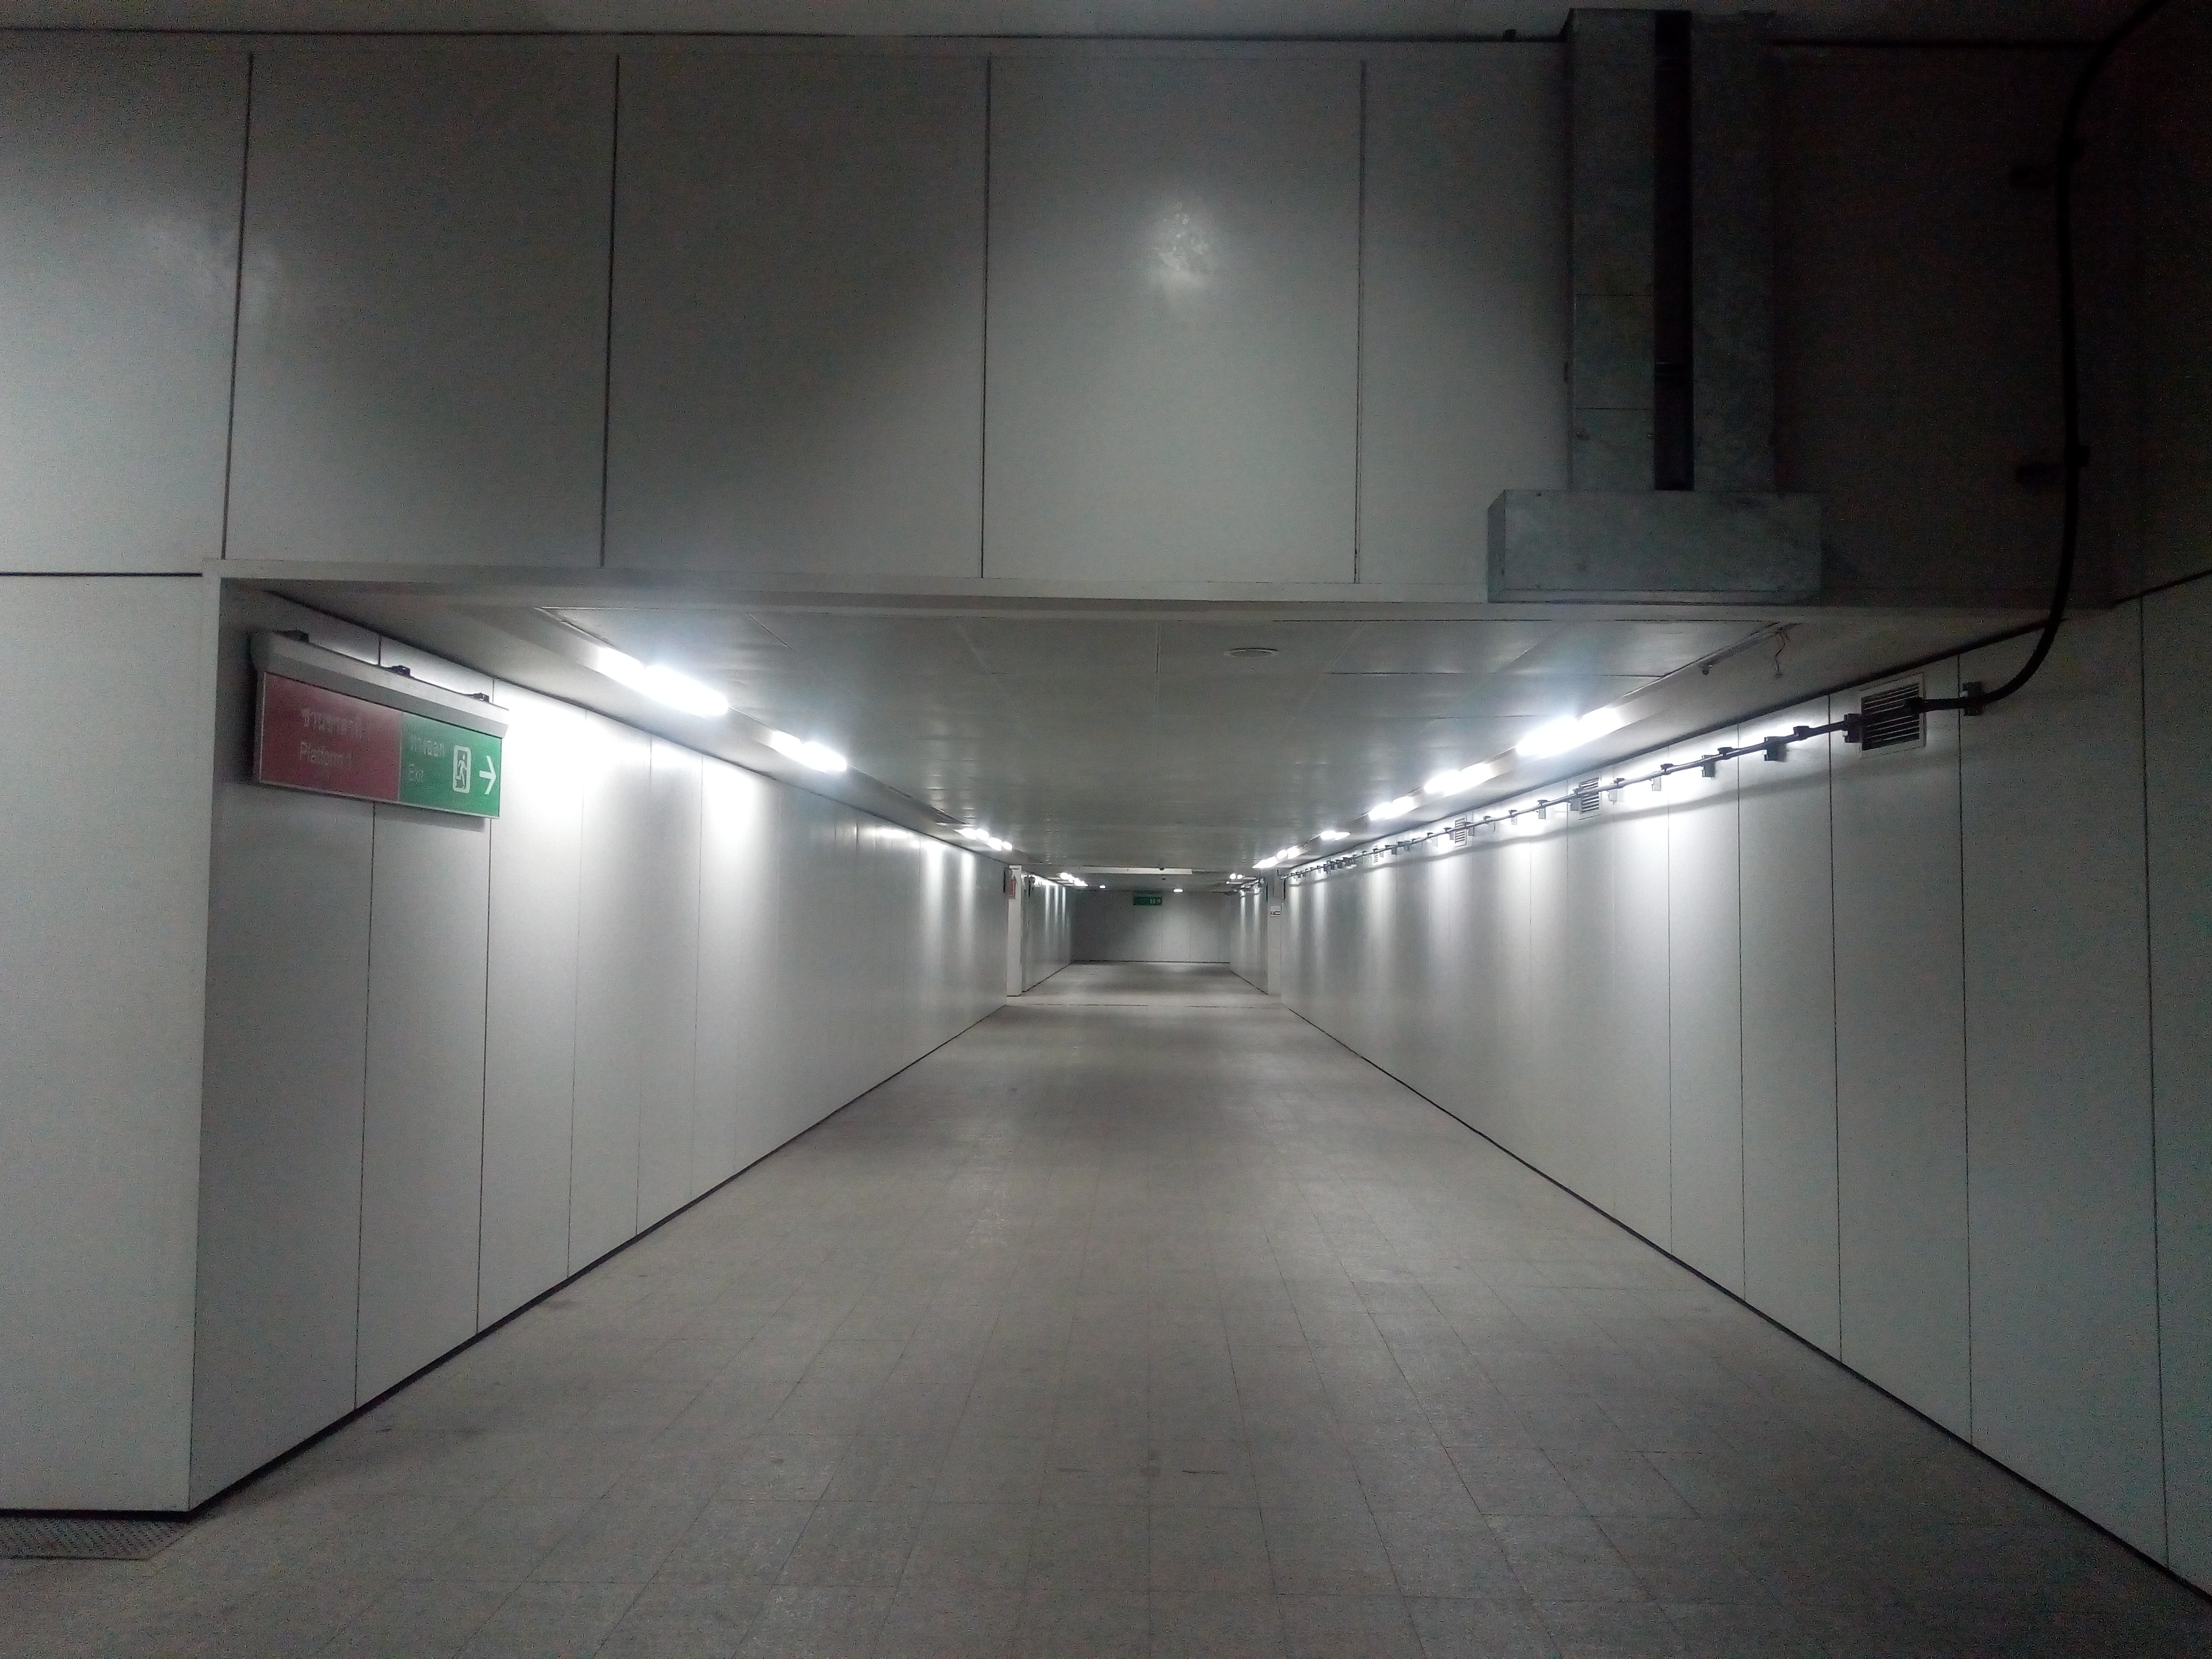 Подземный переход между платформами.